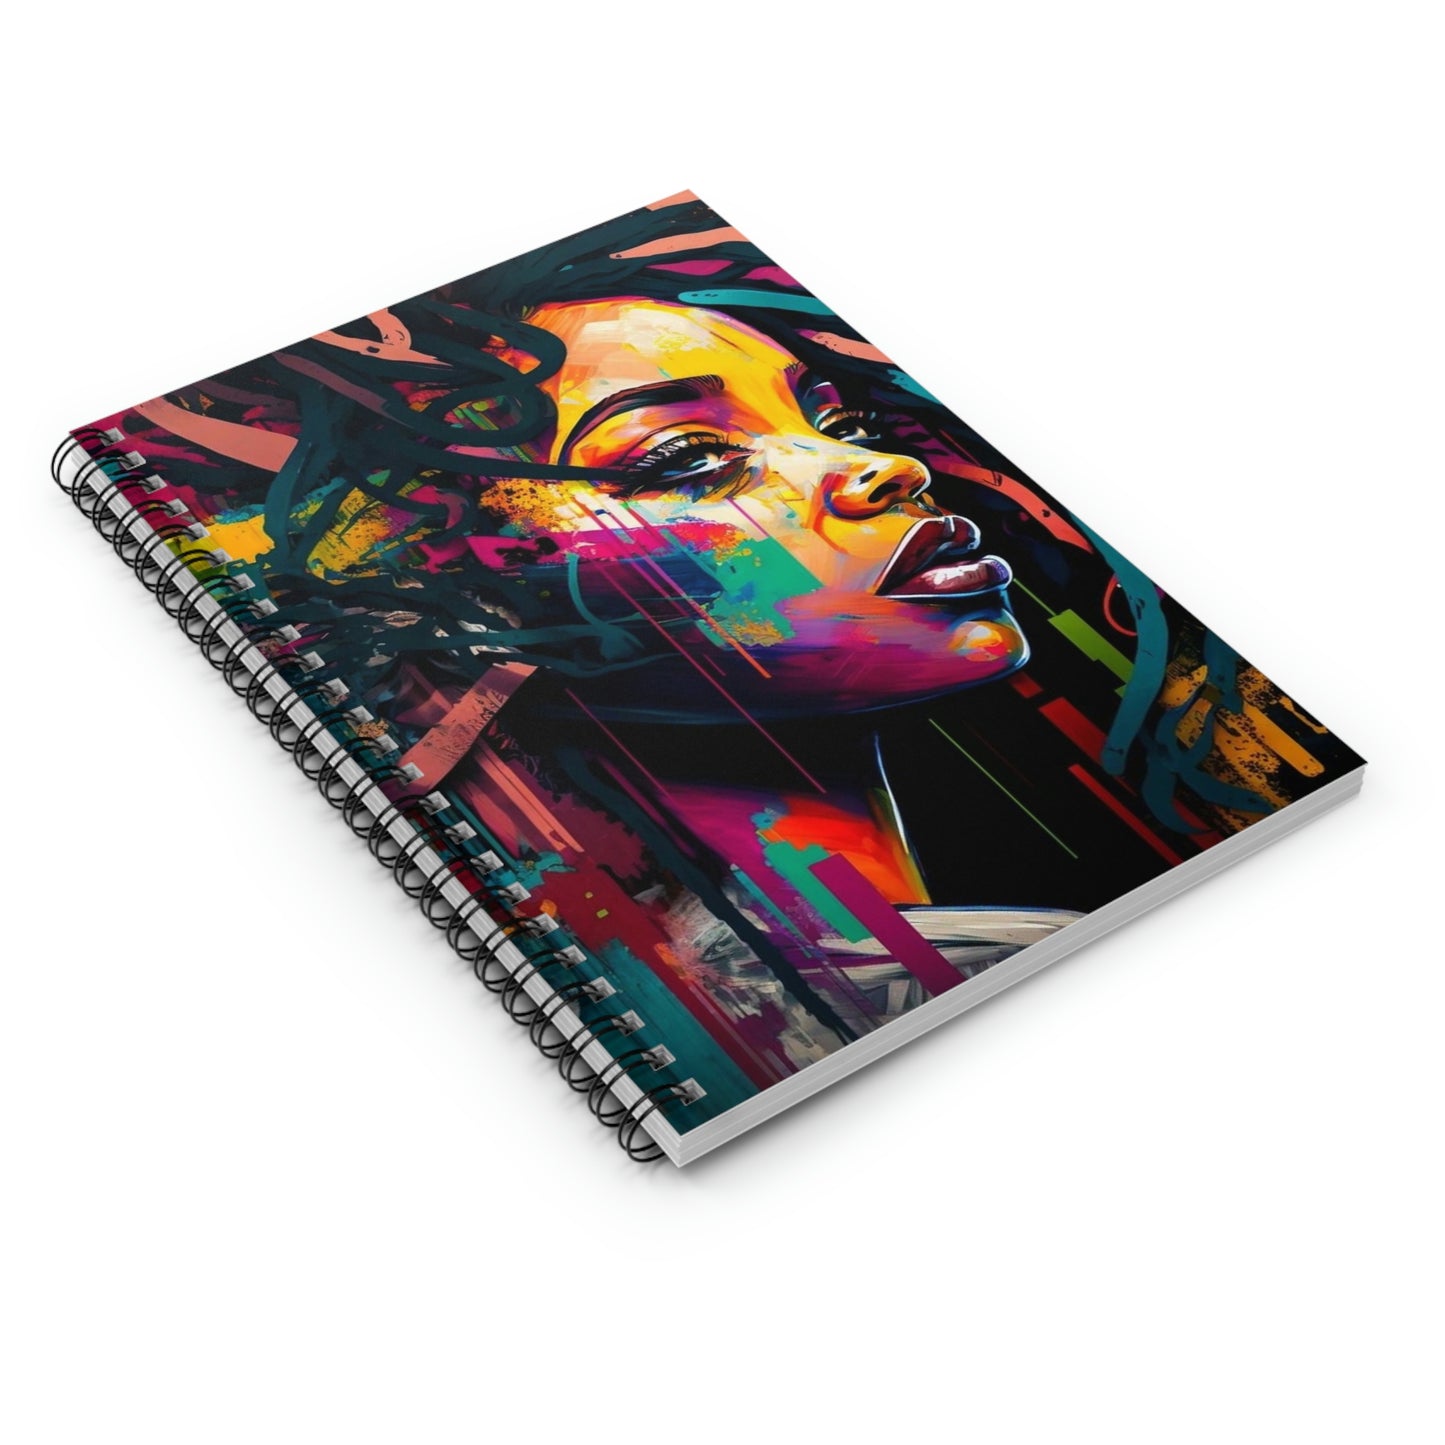 Graffiti Spiral Notebook/Journal